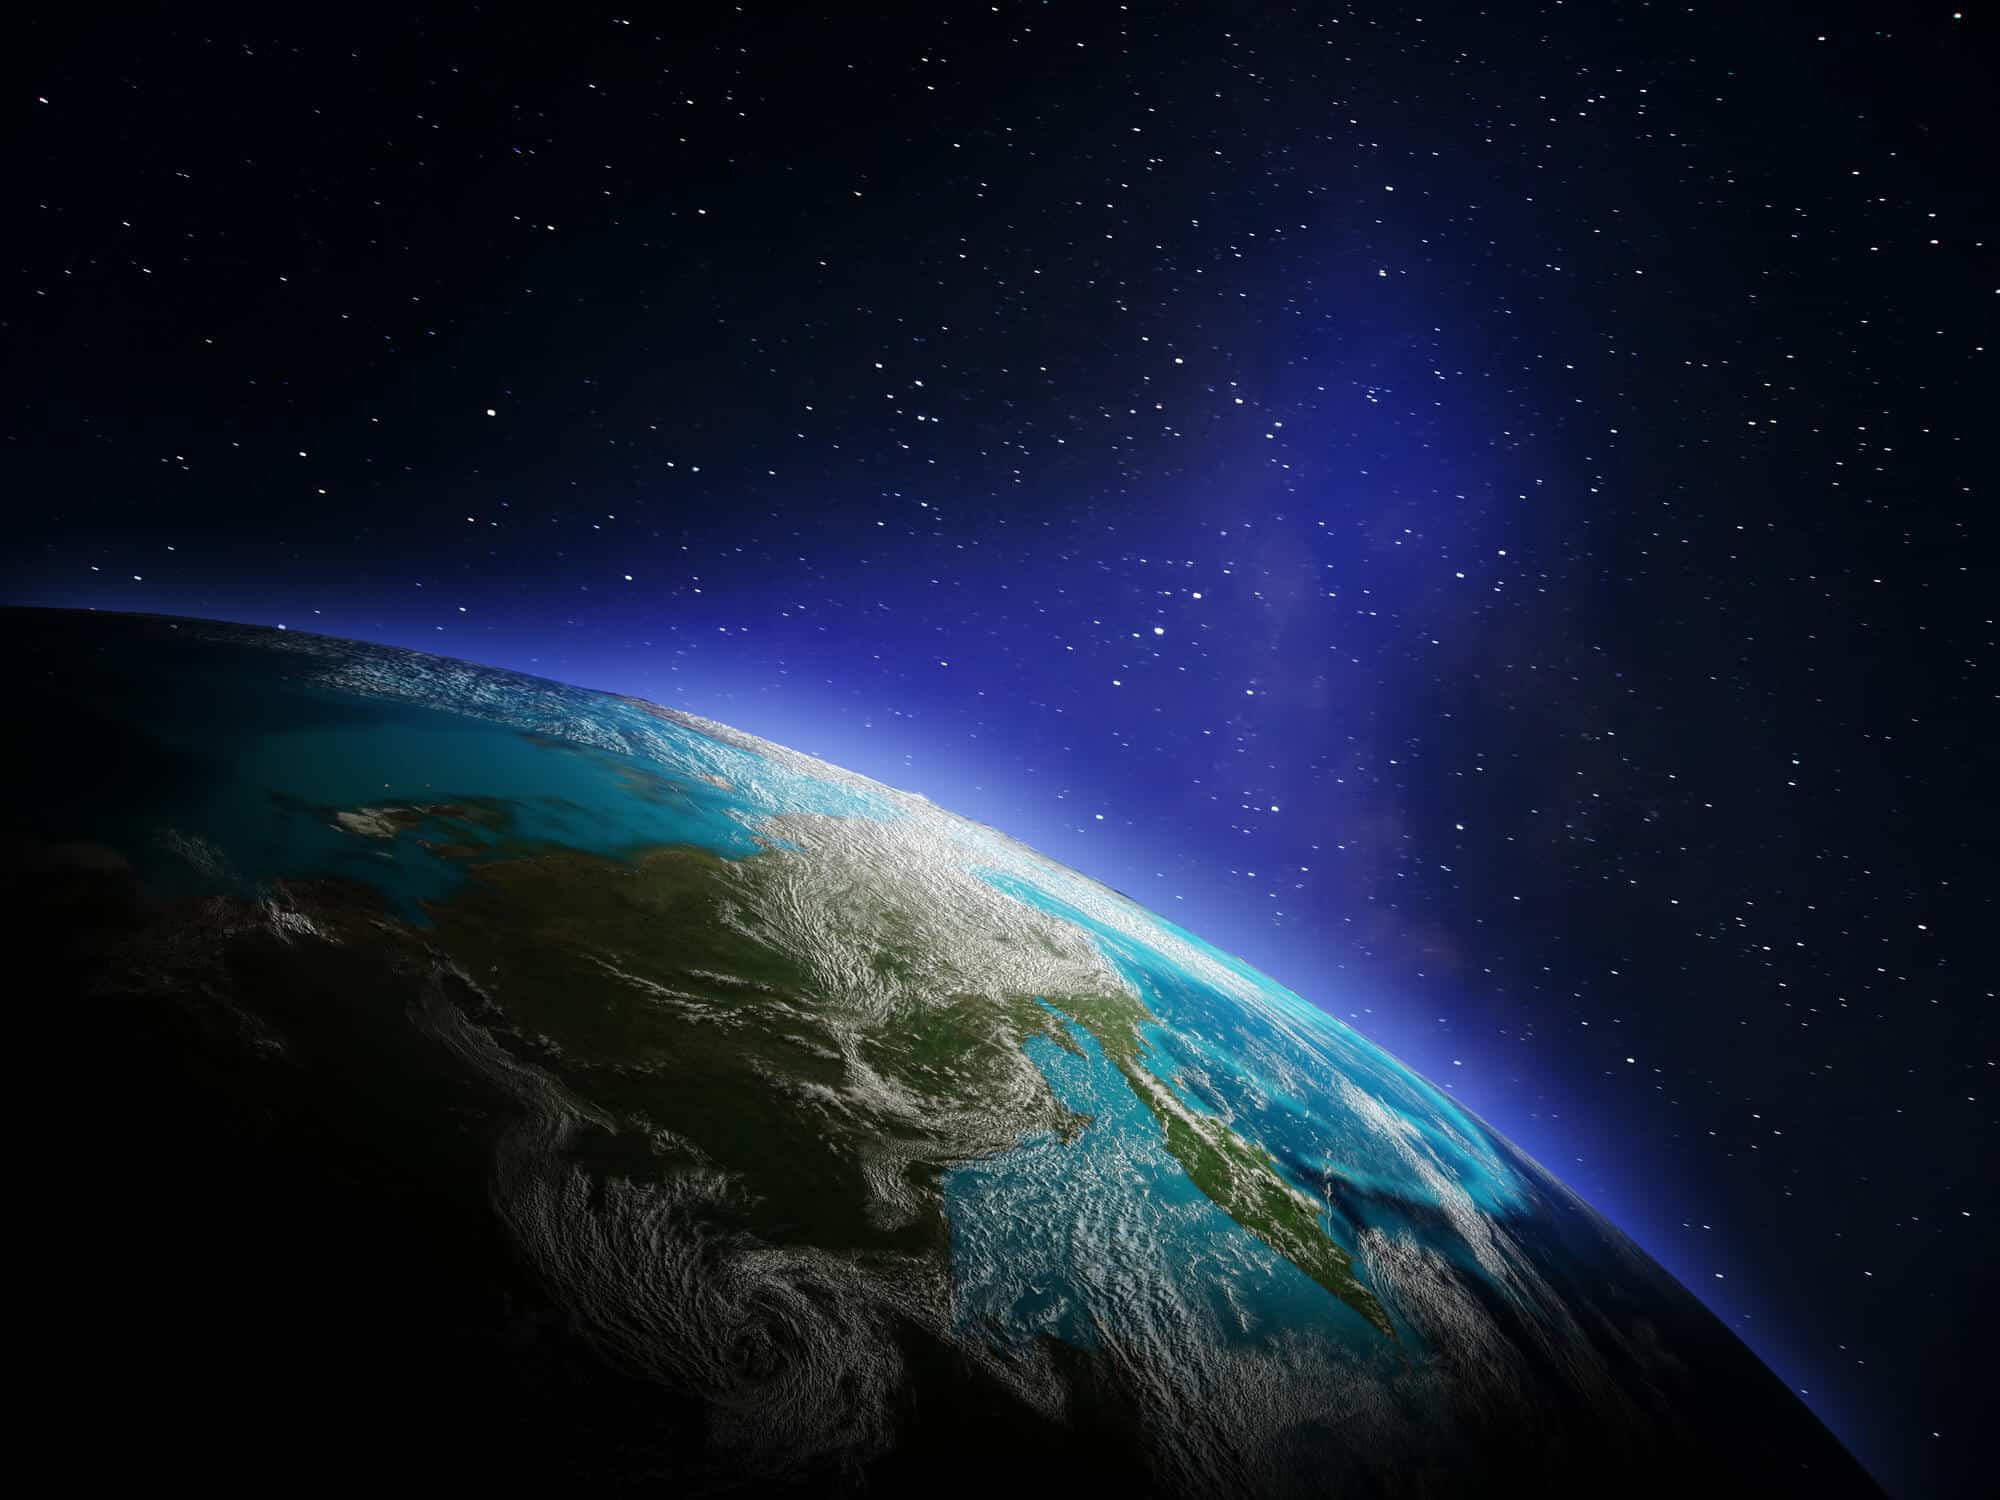 الأرض في صورة من الفضاء. الرسم التوضيحي: موقع Depositphotos.com